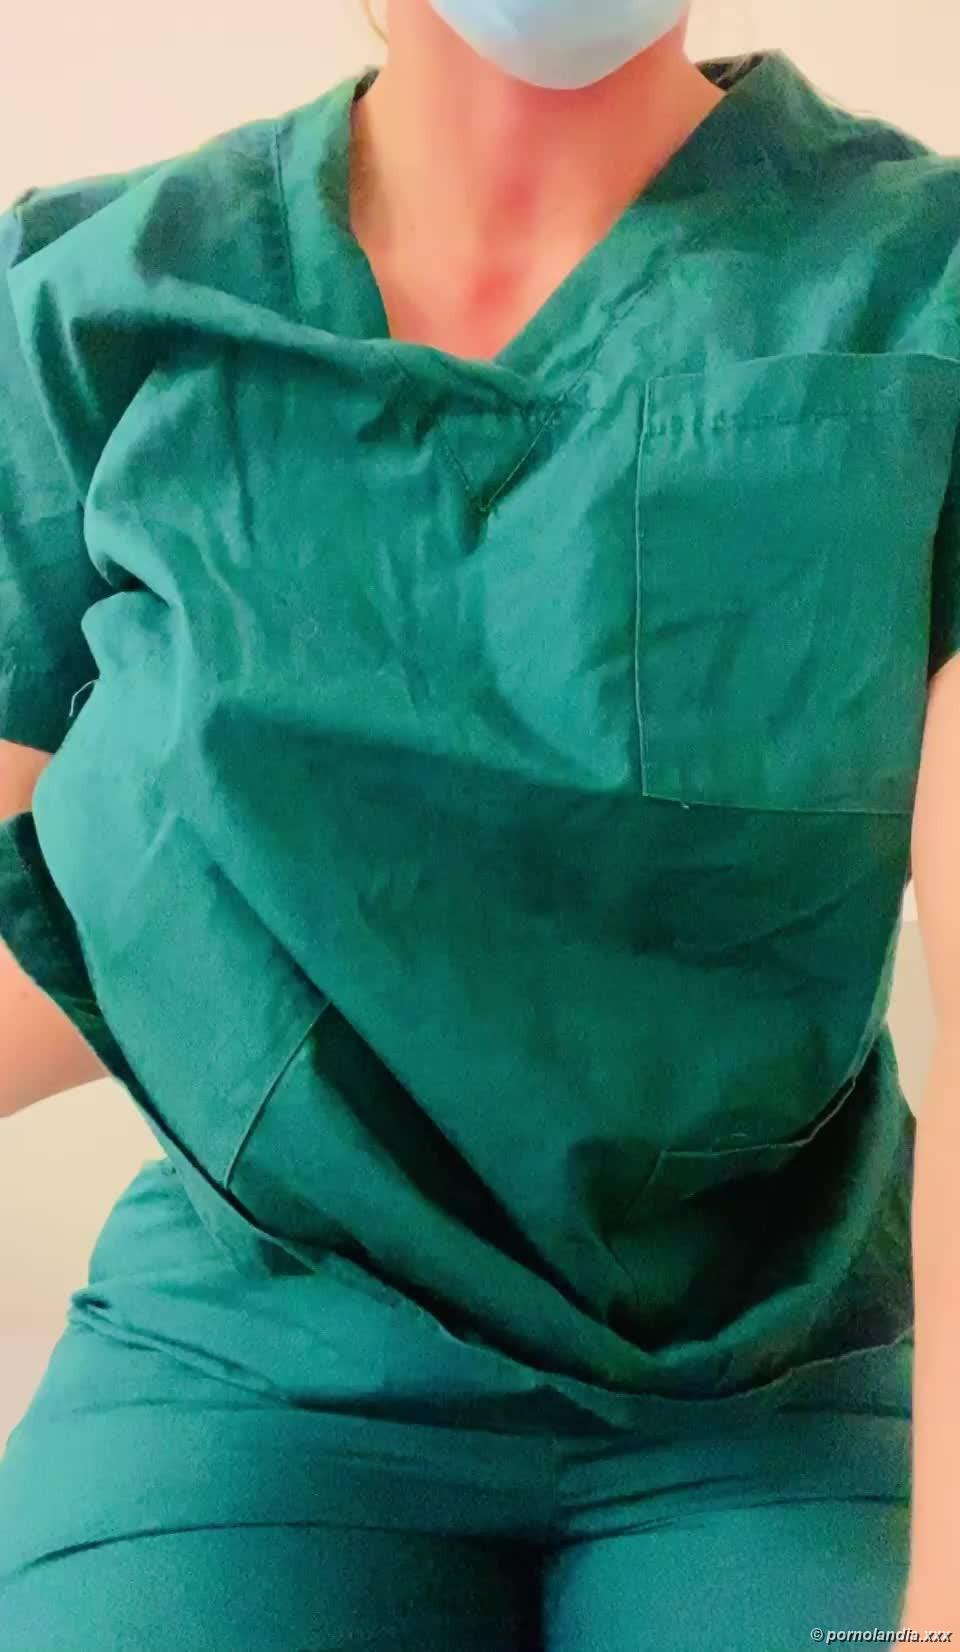 Enfermeira safada mostrando o corpo - Foto 239707